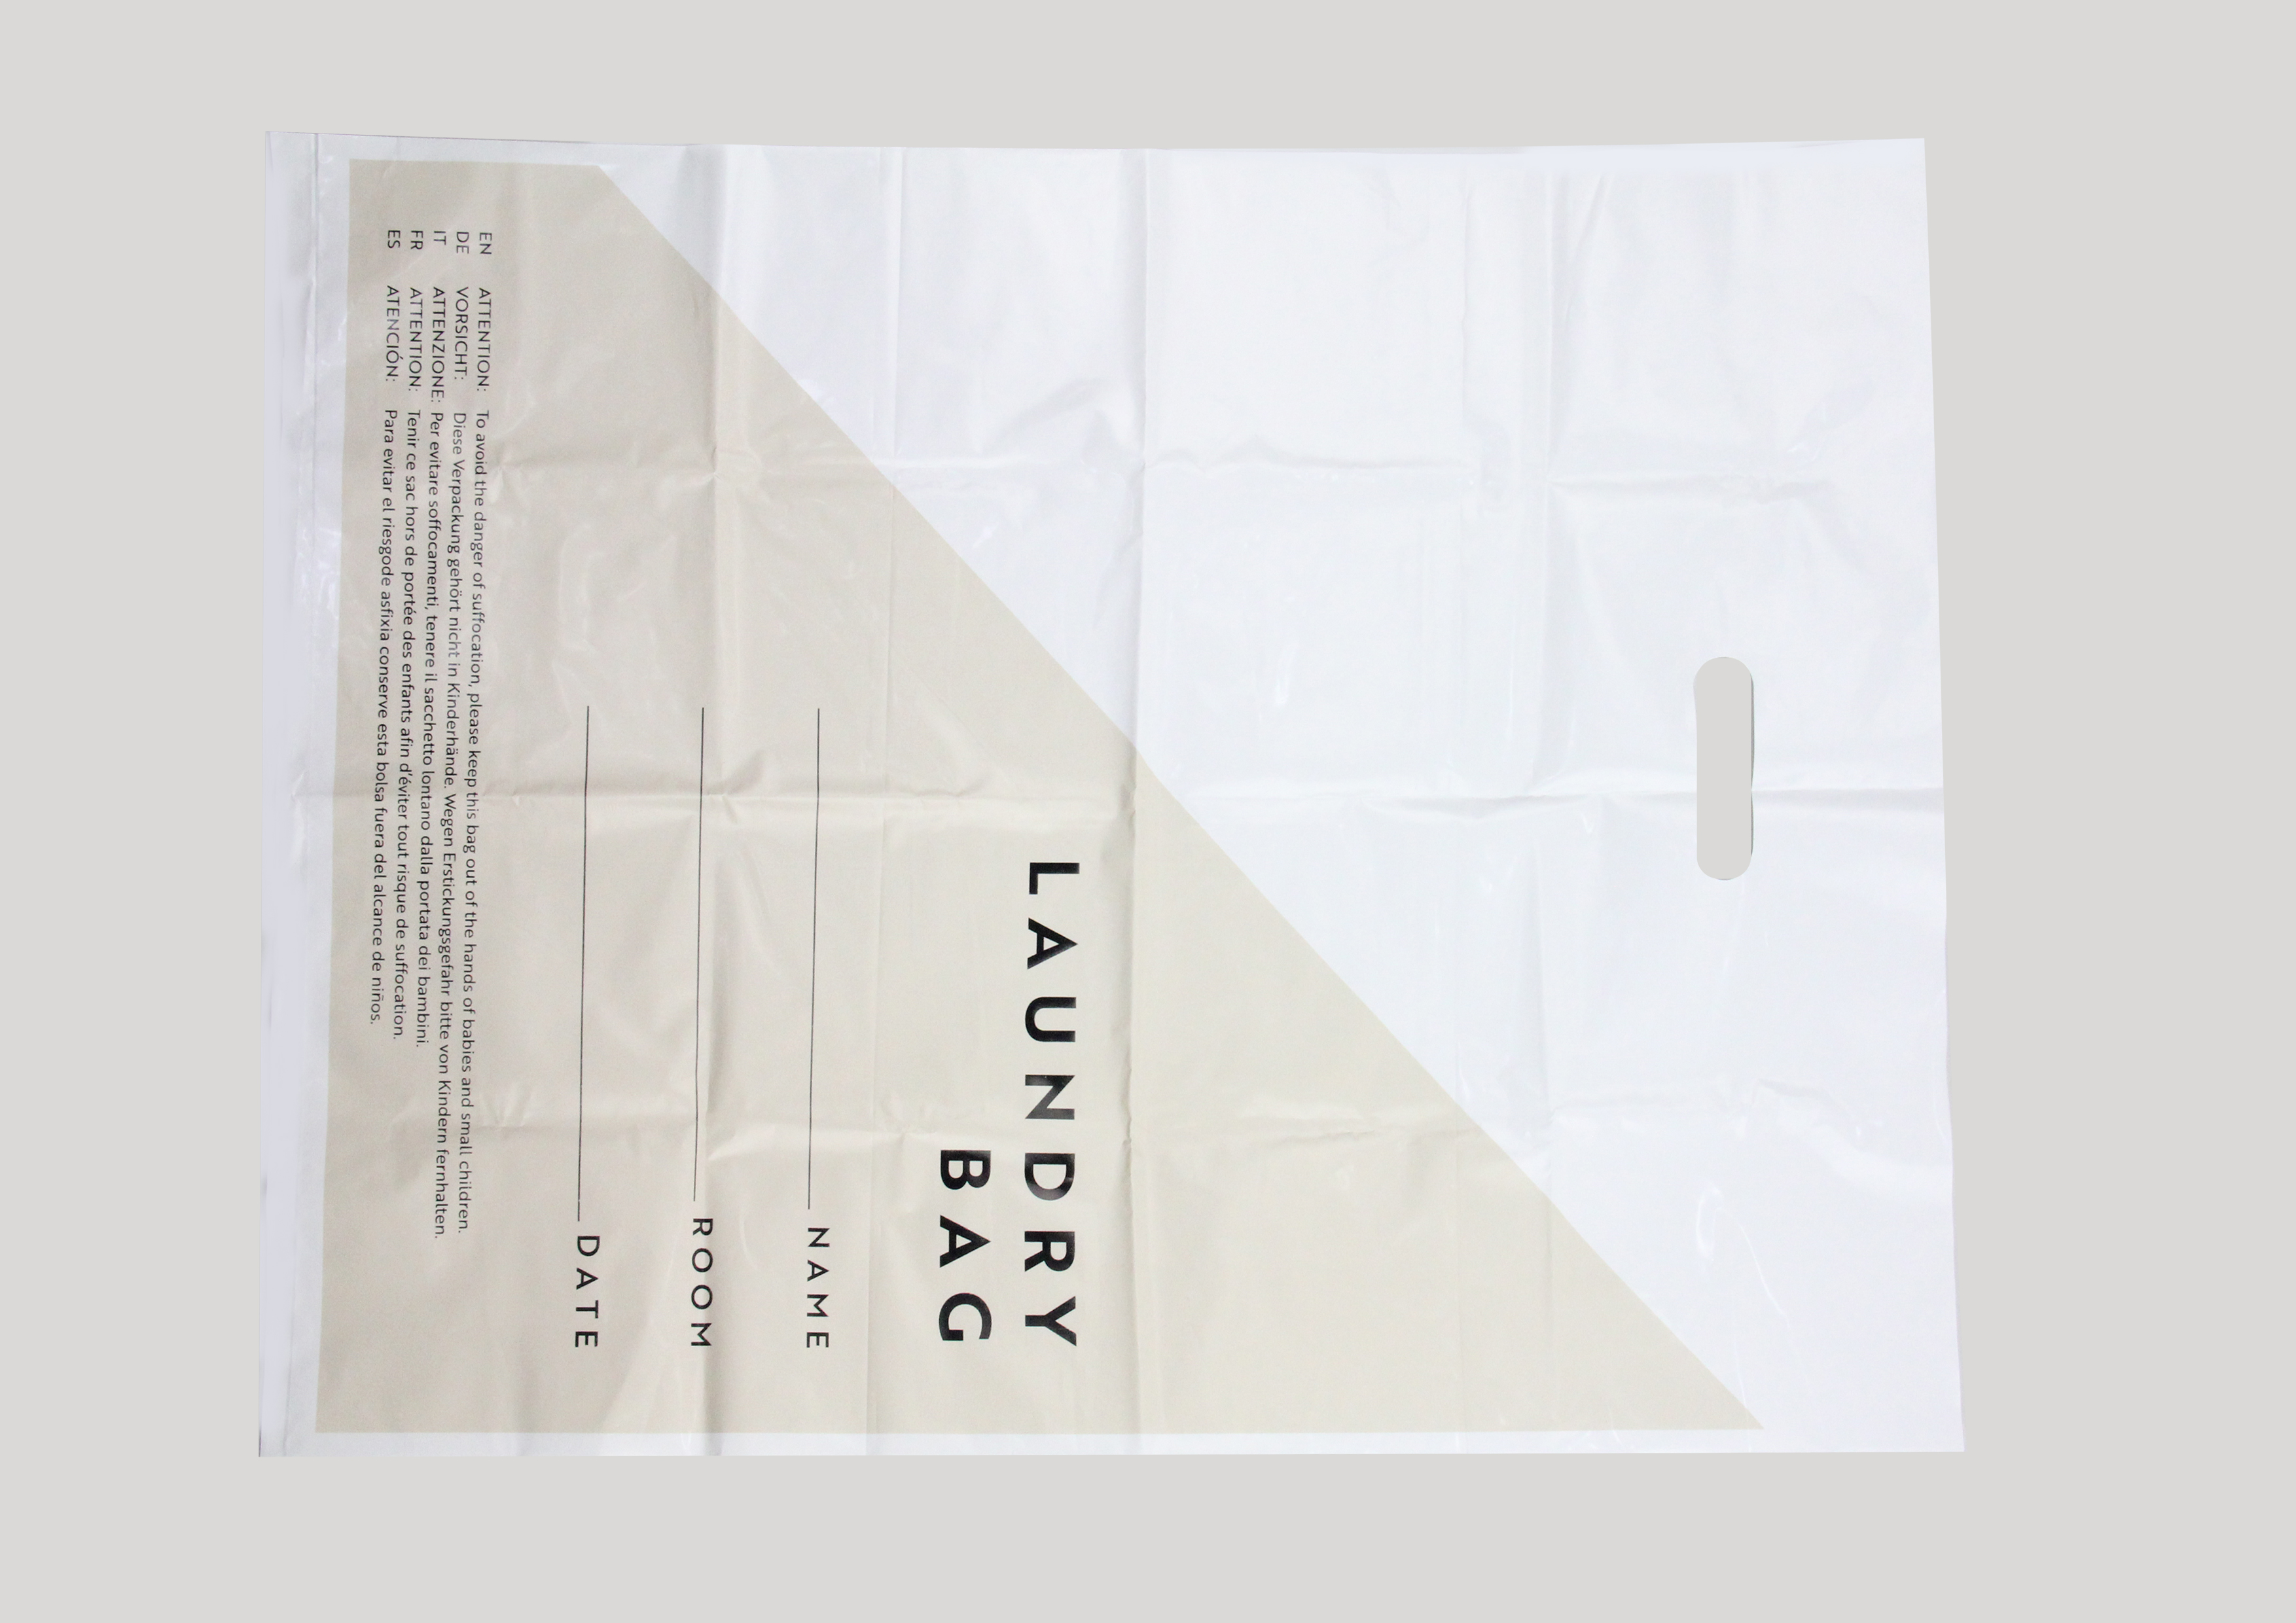 BASIC - Sacco per biancheria in plastica, misura 40x55cm